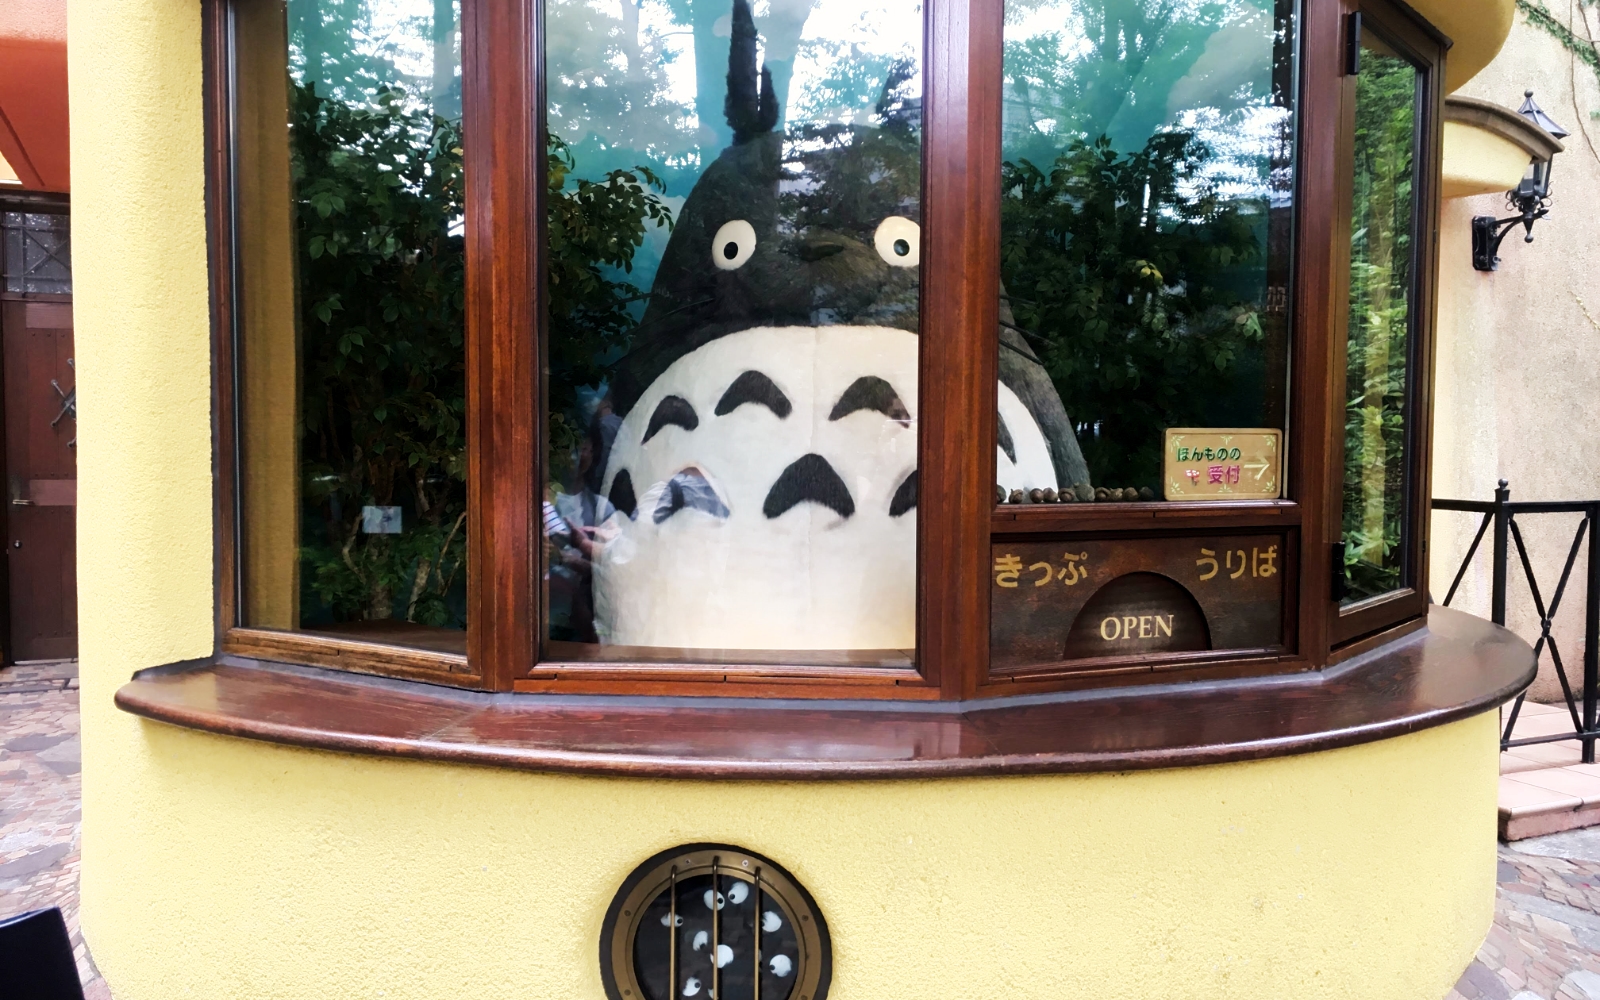 Totoro - Exploring the Studio Ghibli Museum